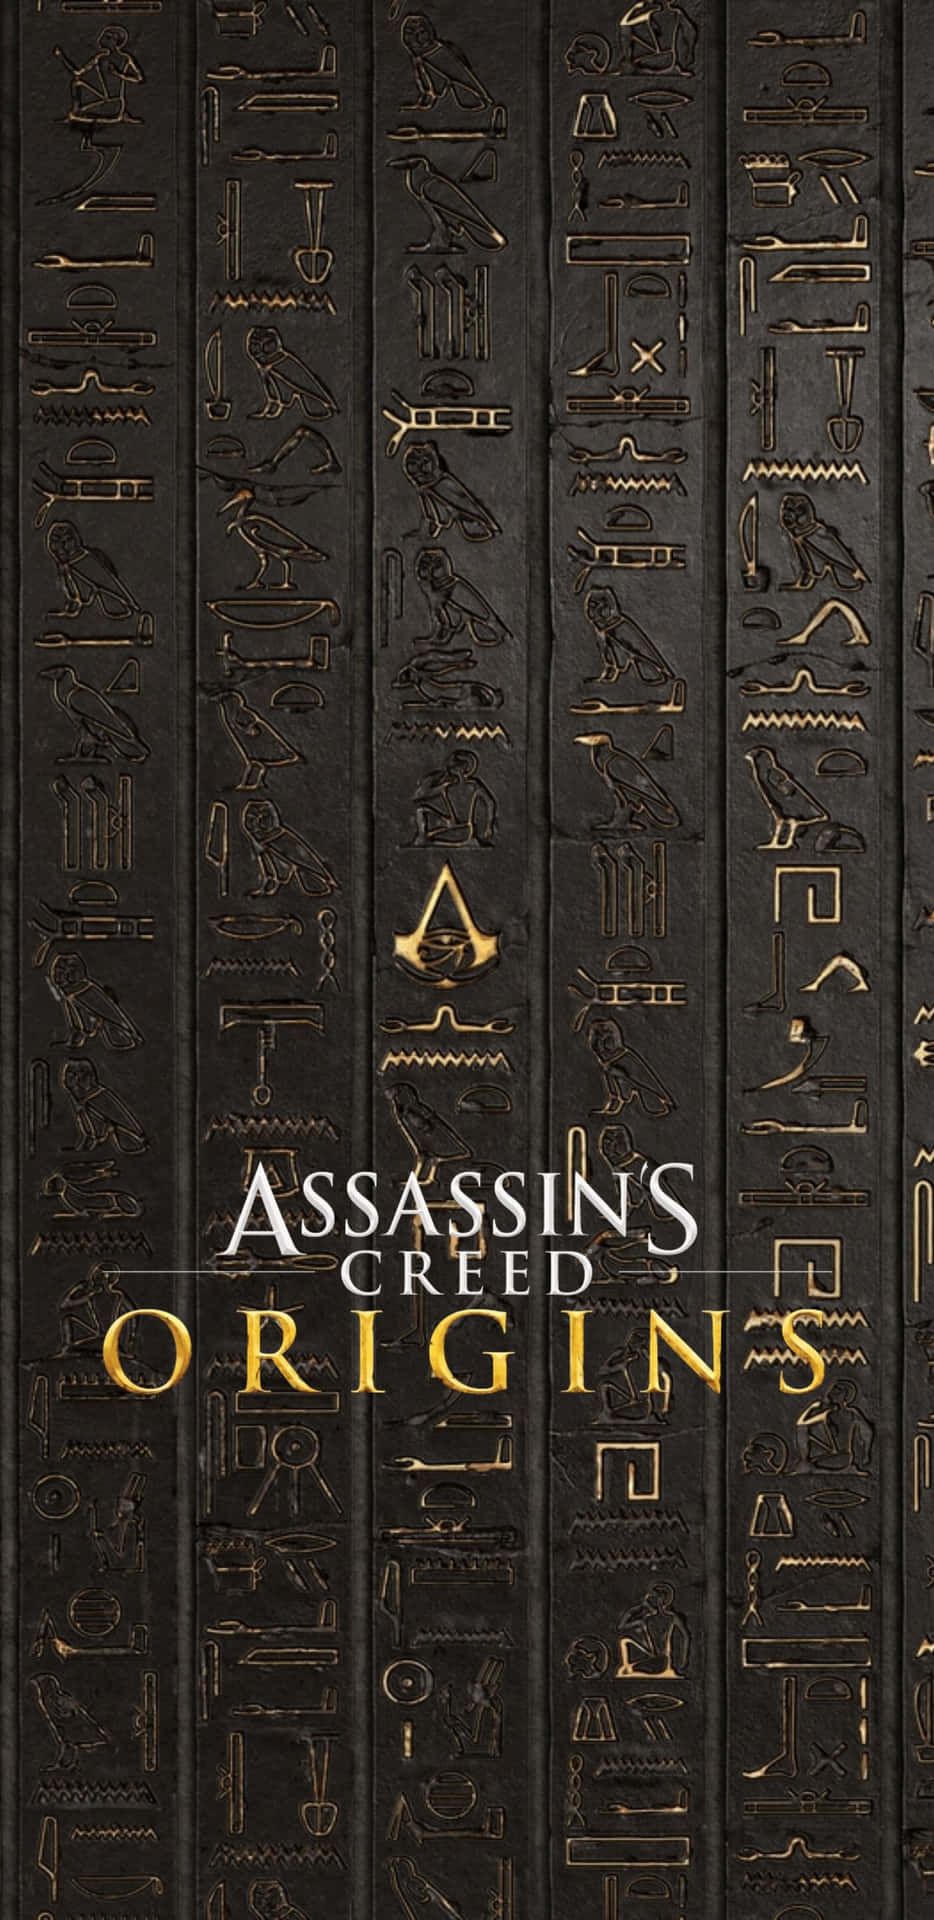 Fondode Pantalla Del Juego Assassins's Creed Origins Para Pixel 3xl.